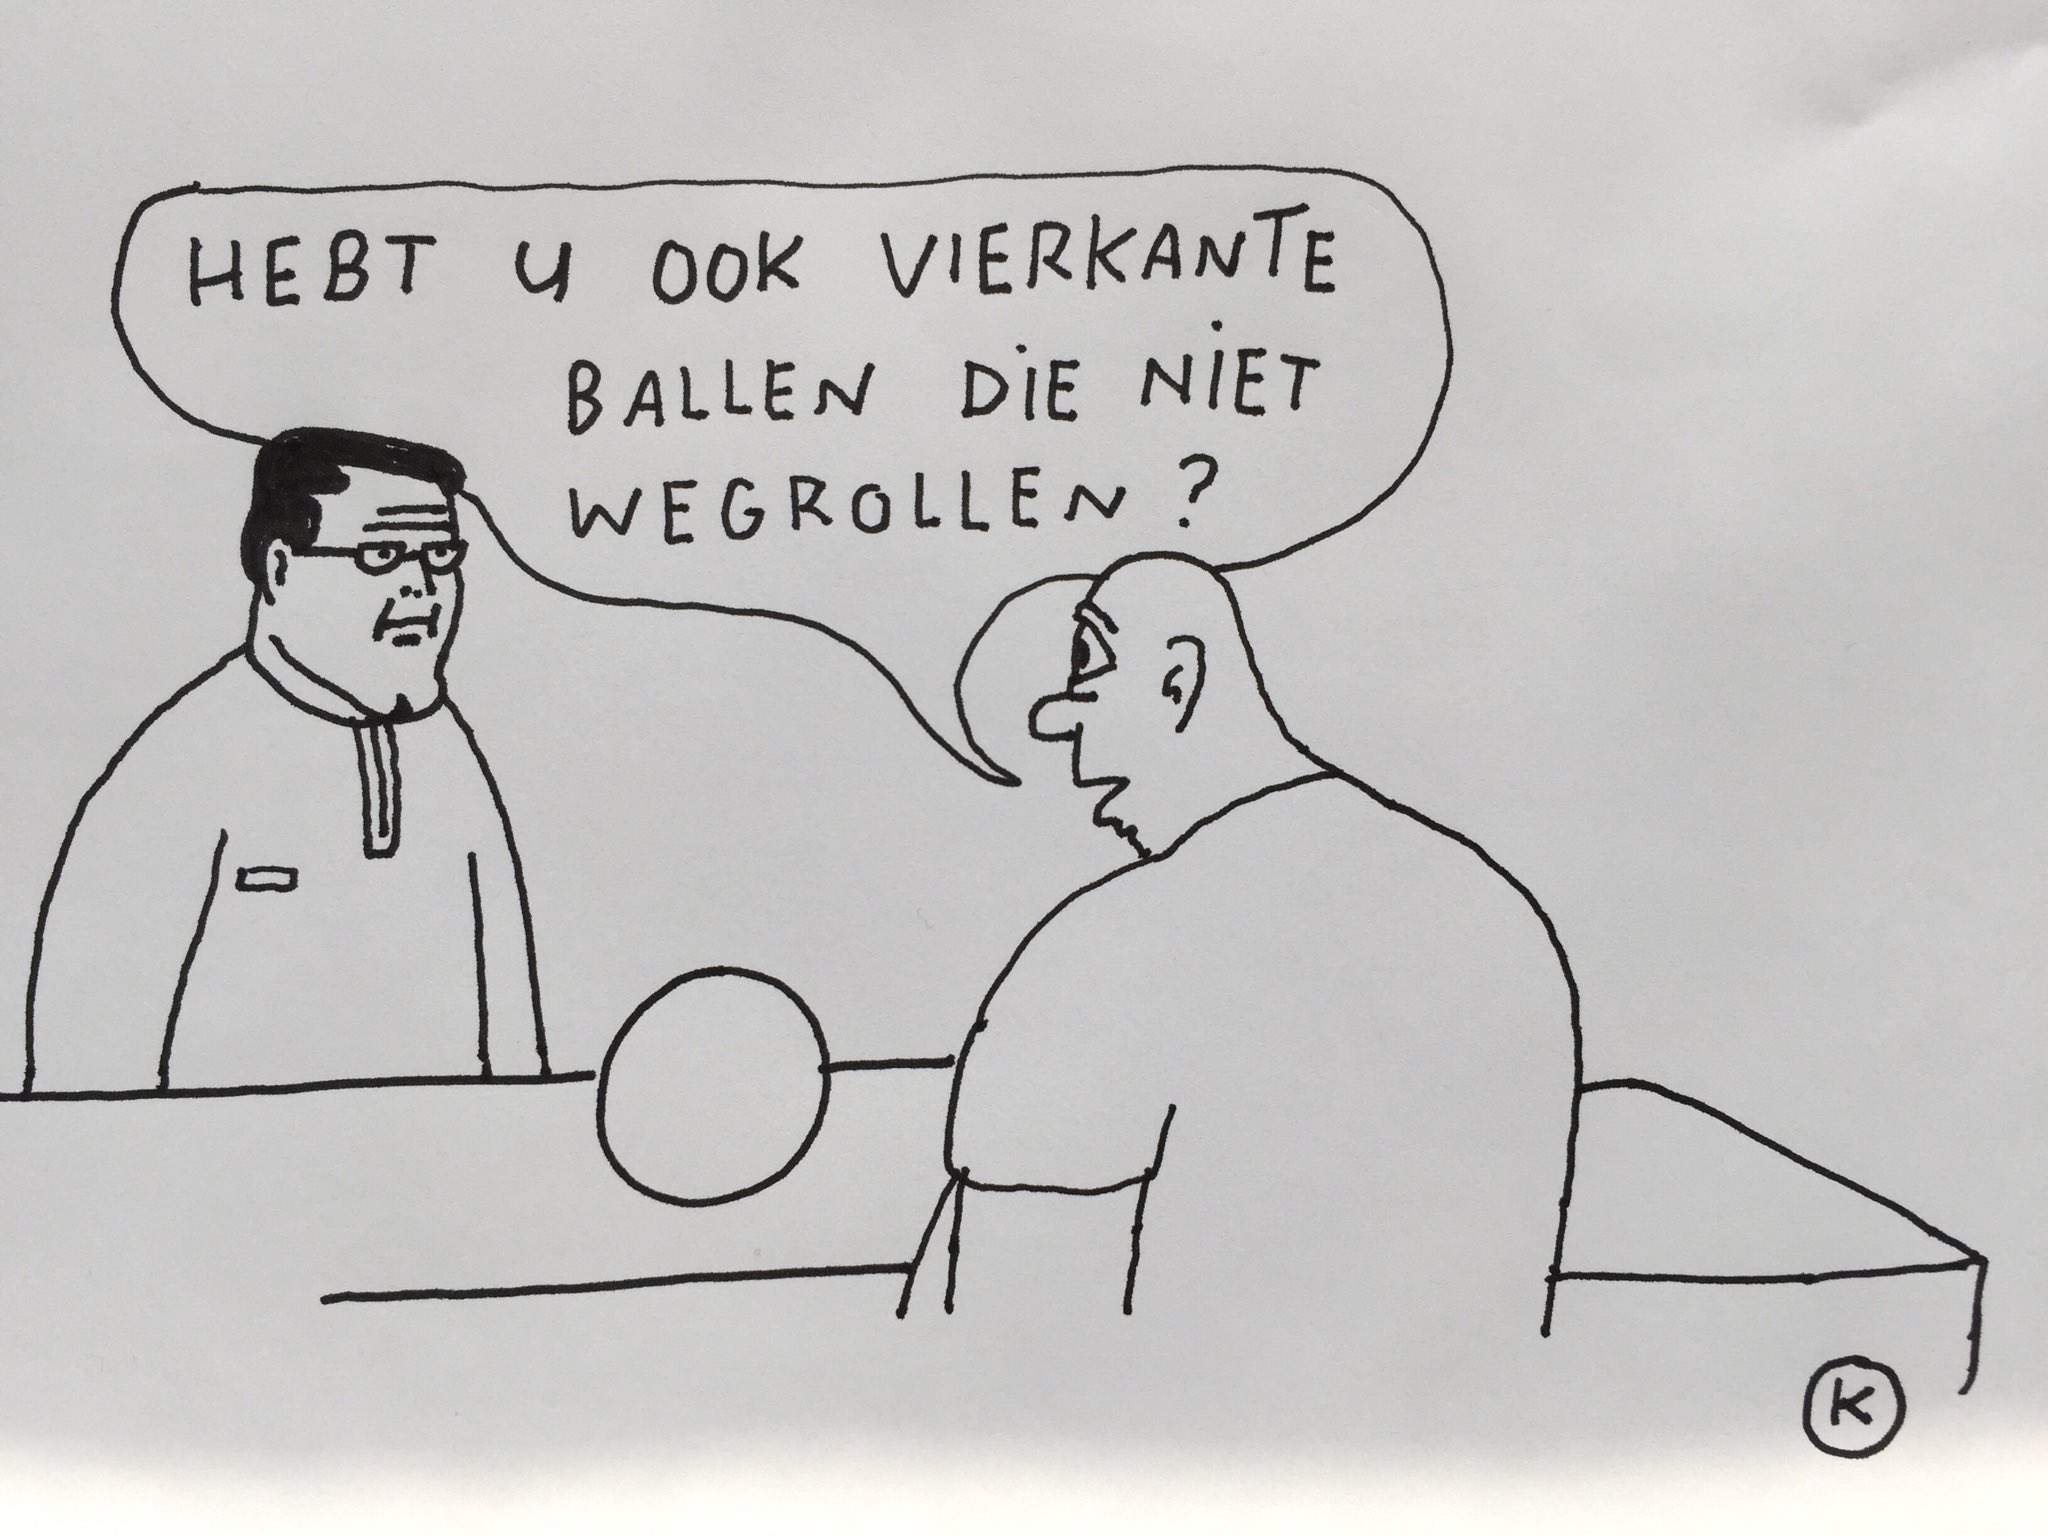 actualiteitjunk on Twitter: "Vierkante #ballen.... #cartoon van @LucZeebroek https://t.co/aJ3n31y2BS" / Twitter